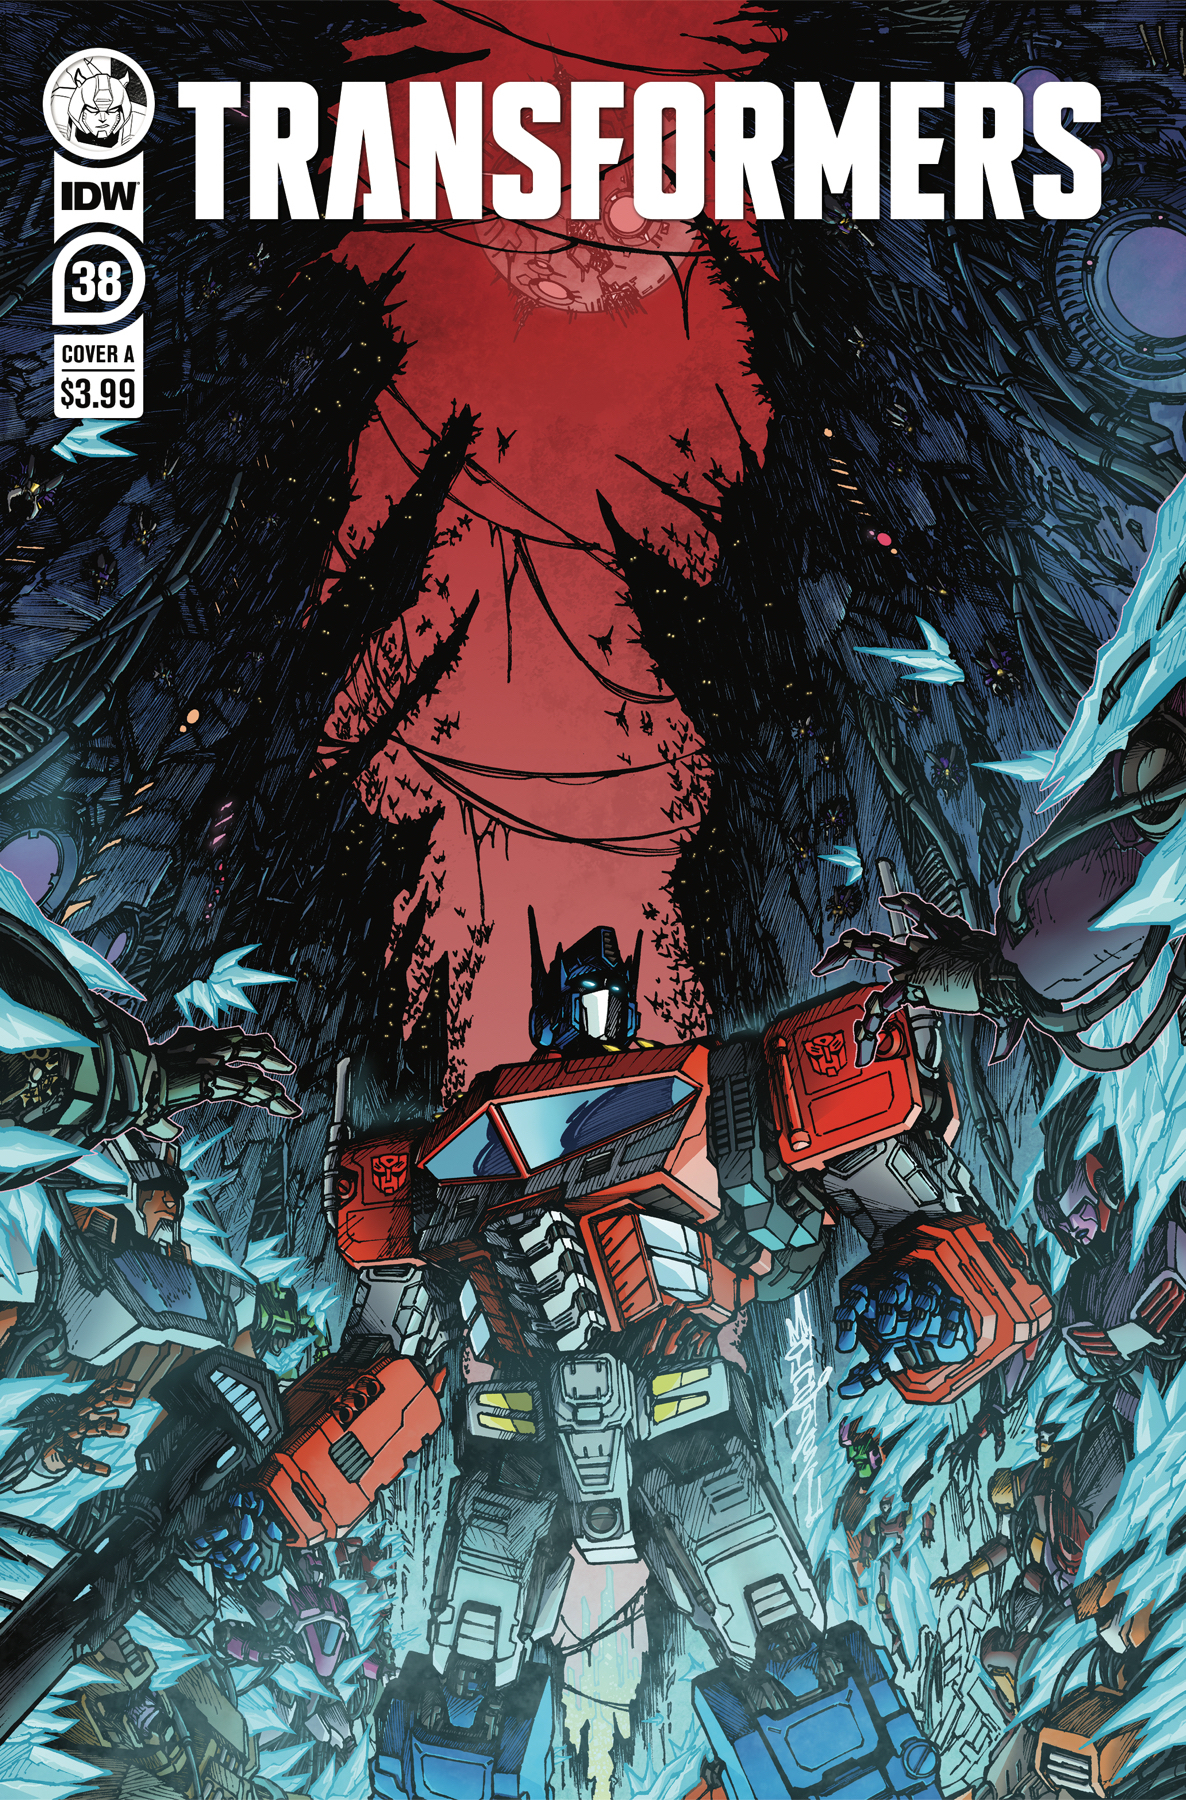 Transformers #38 Cover A Milne